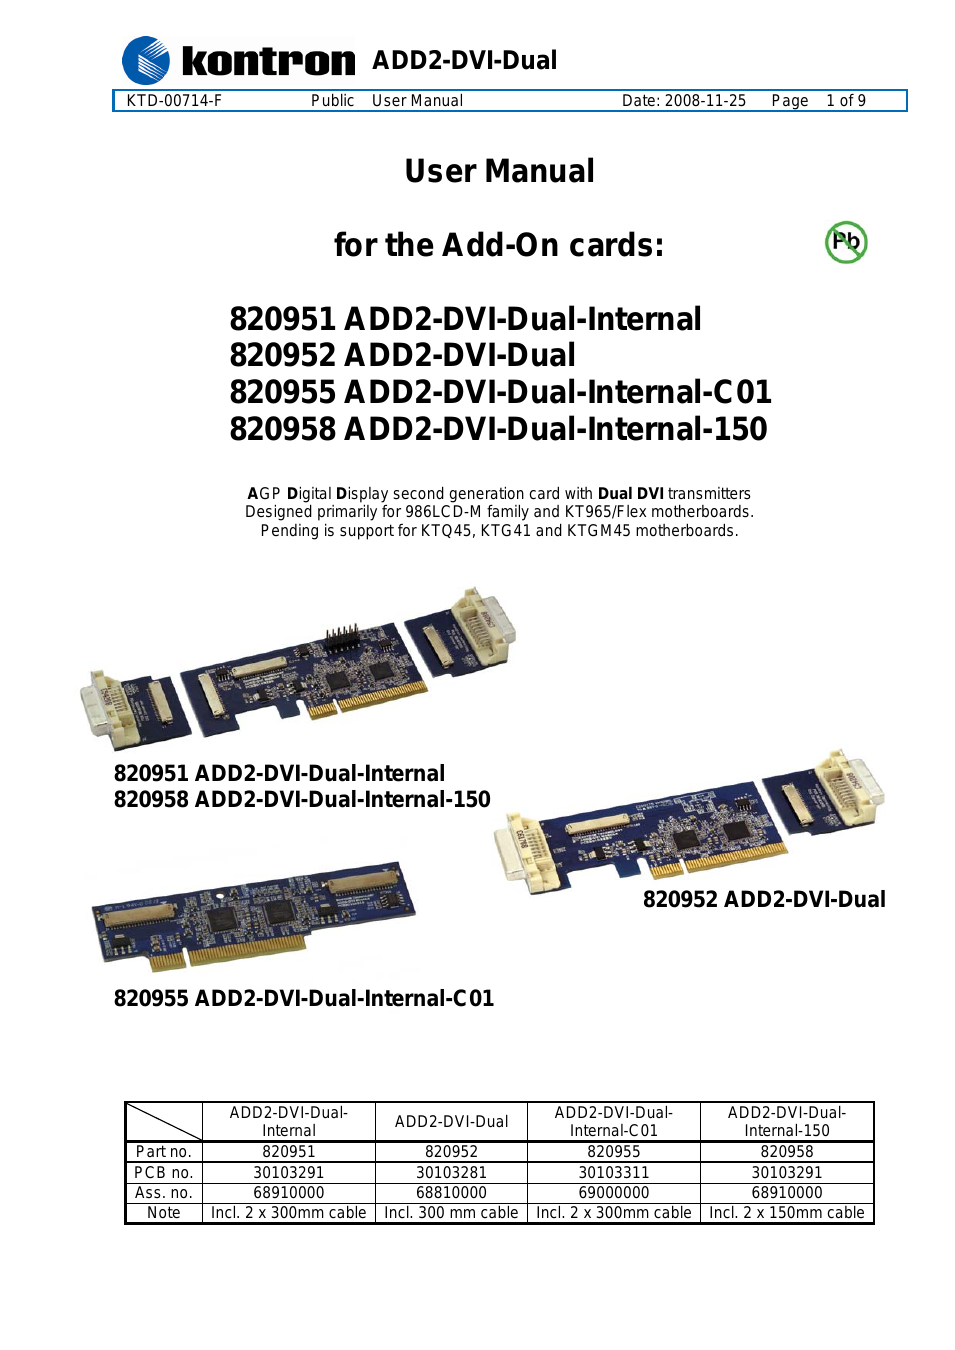 820952 ADD2-DVI-Dual